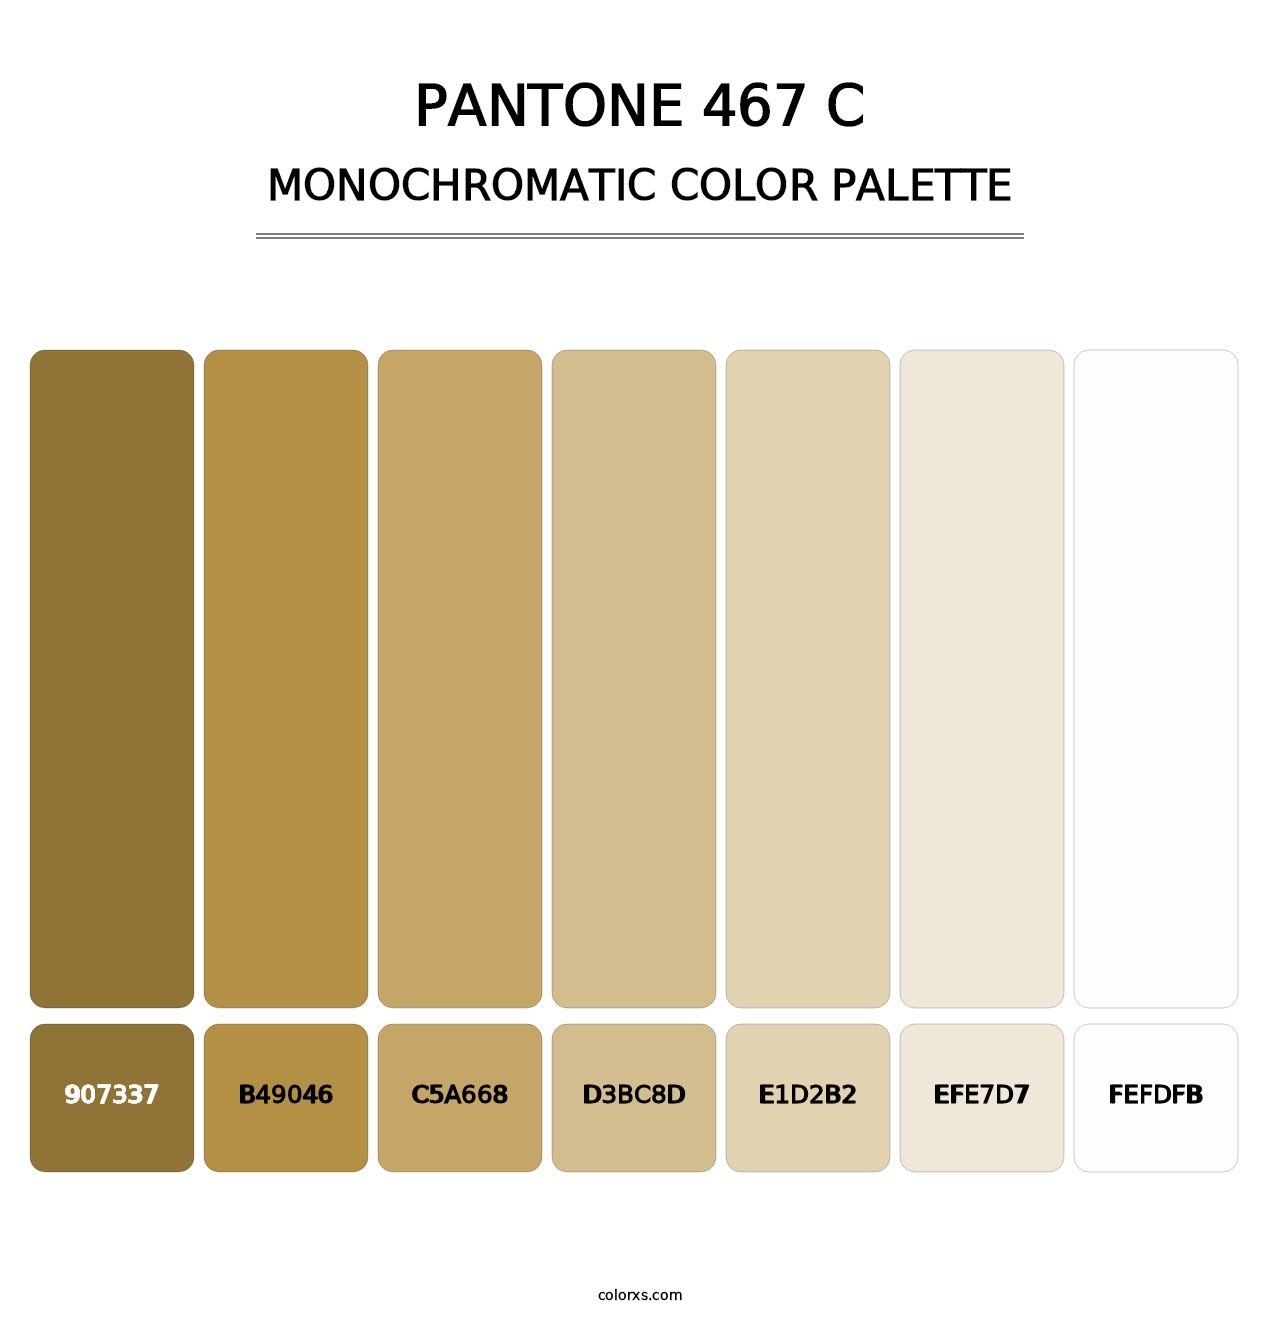 PANTONE 467 C - Monochromatic Color Palette